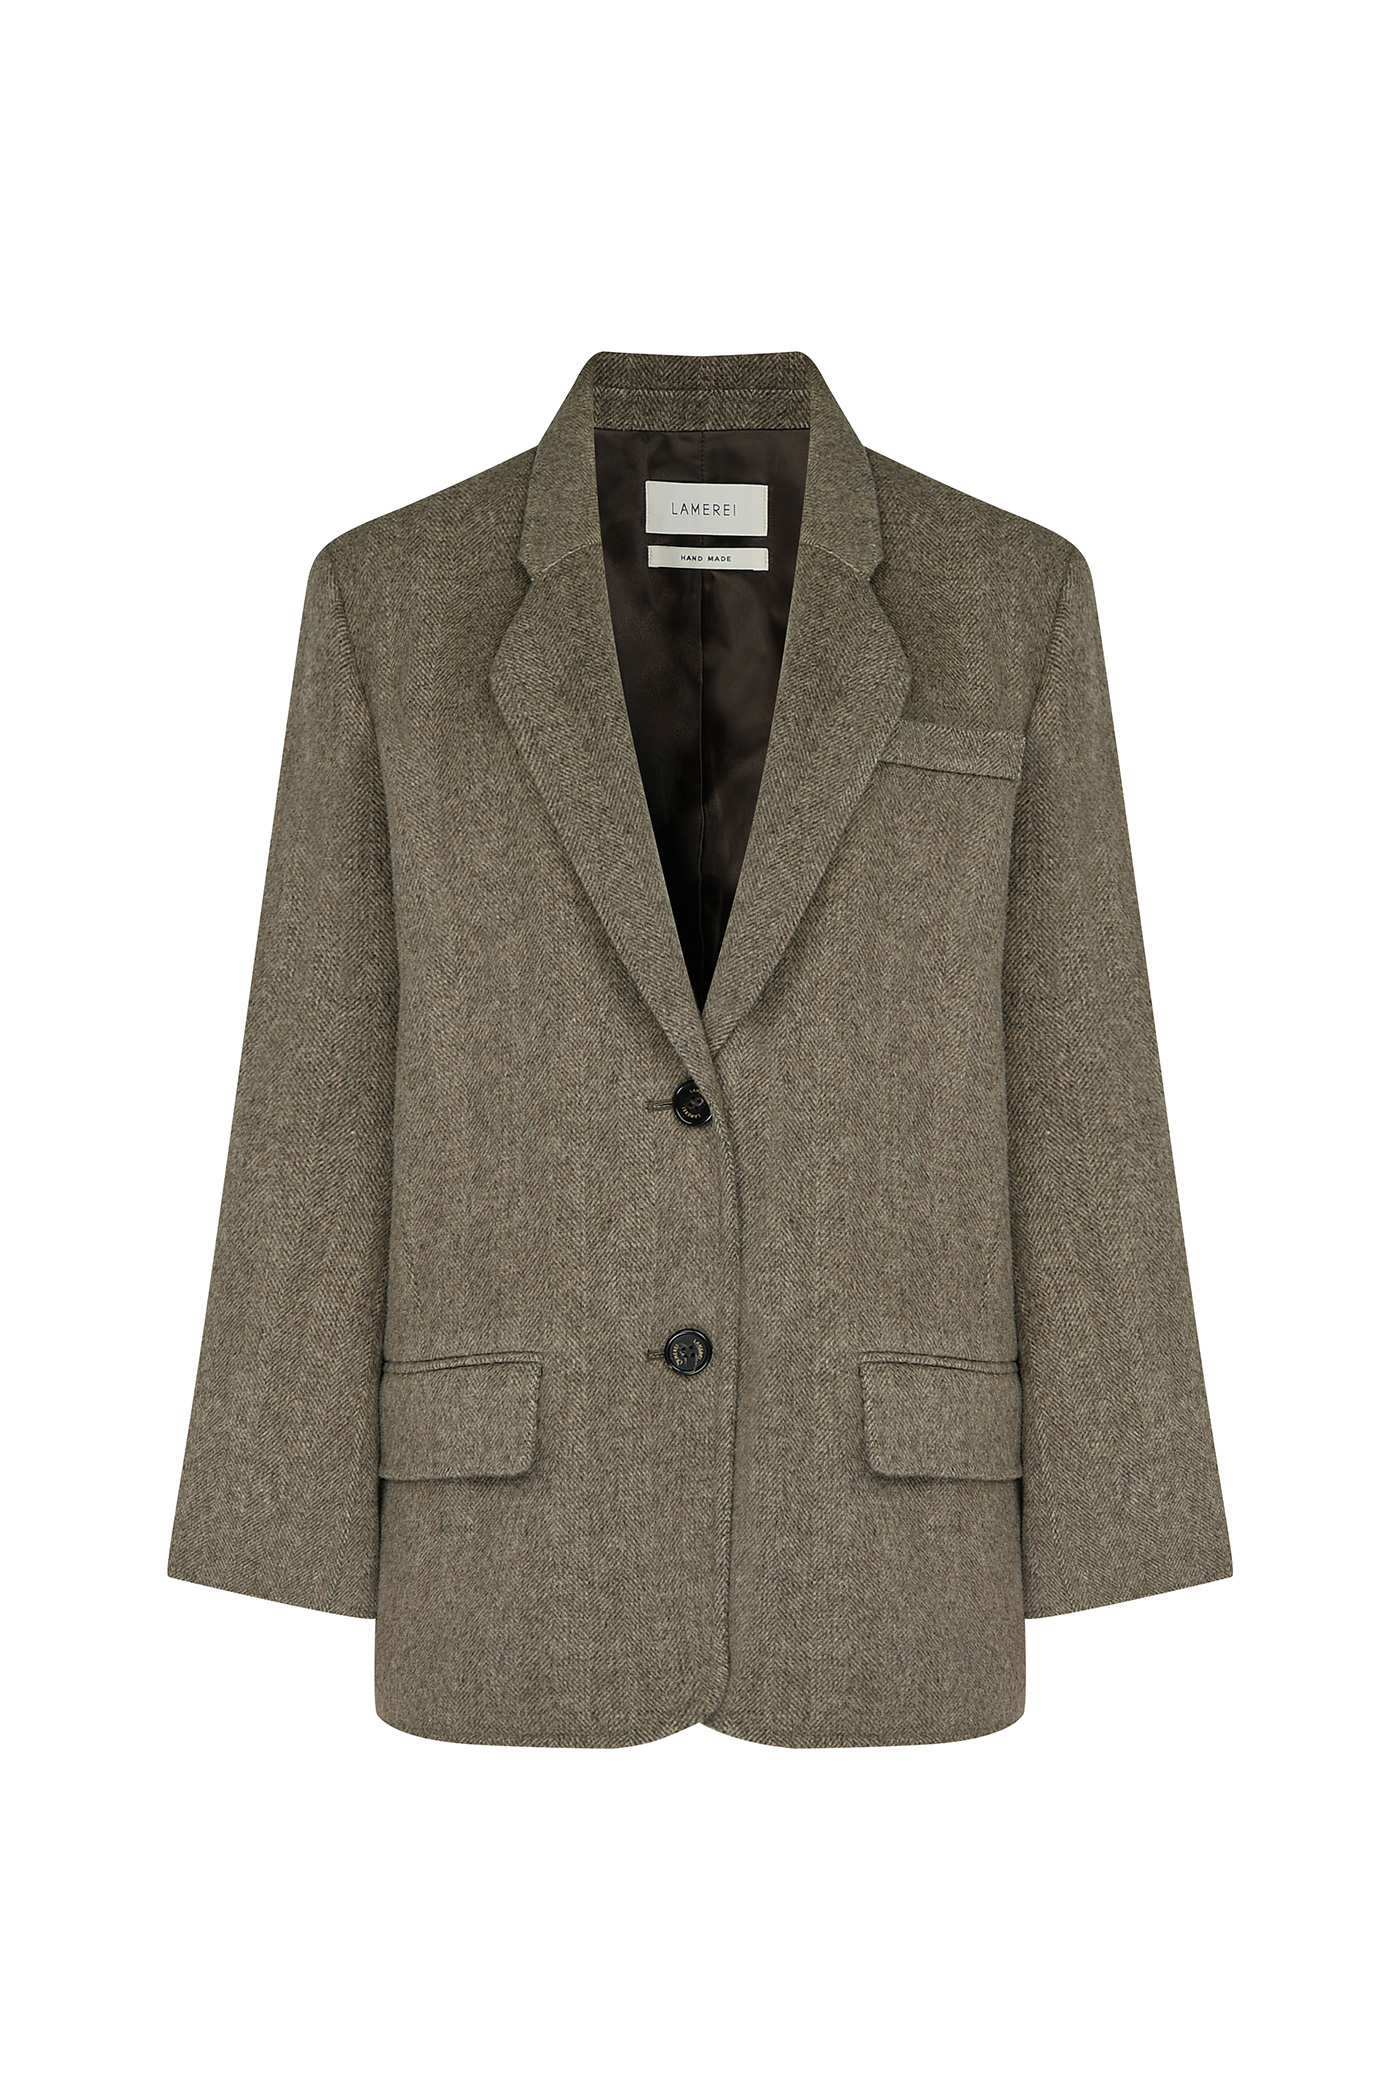 [SAMPLE]Wool Herringbone Handmade Jacket[LMBBWIJK203]-Brown